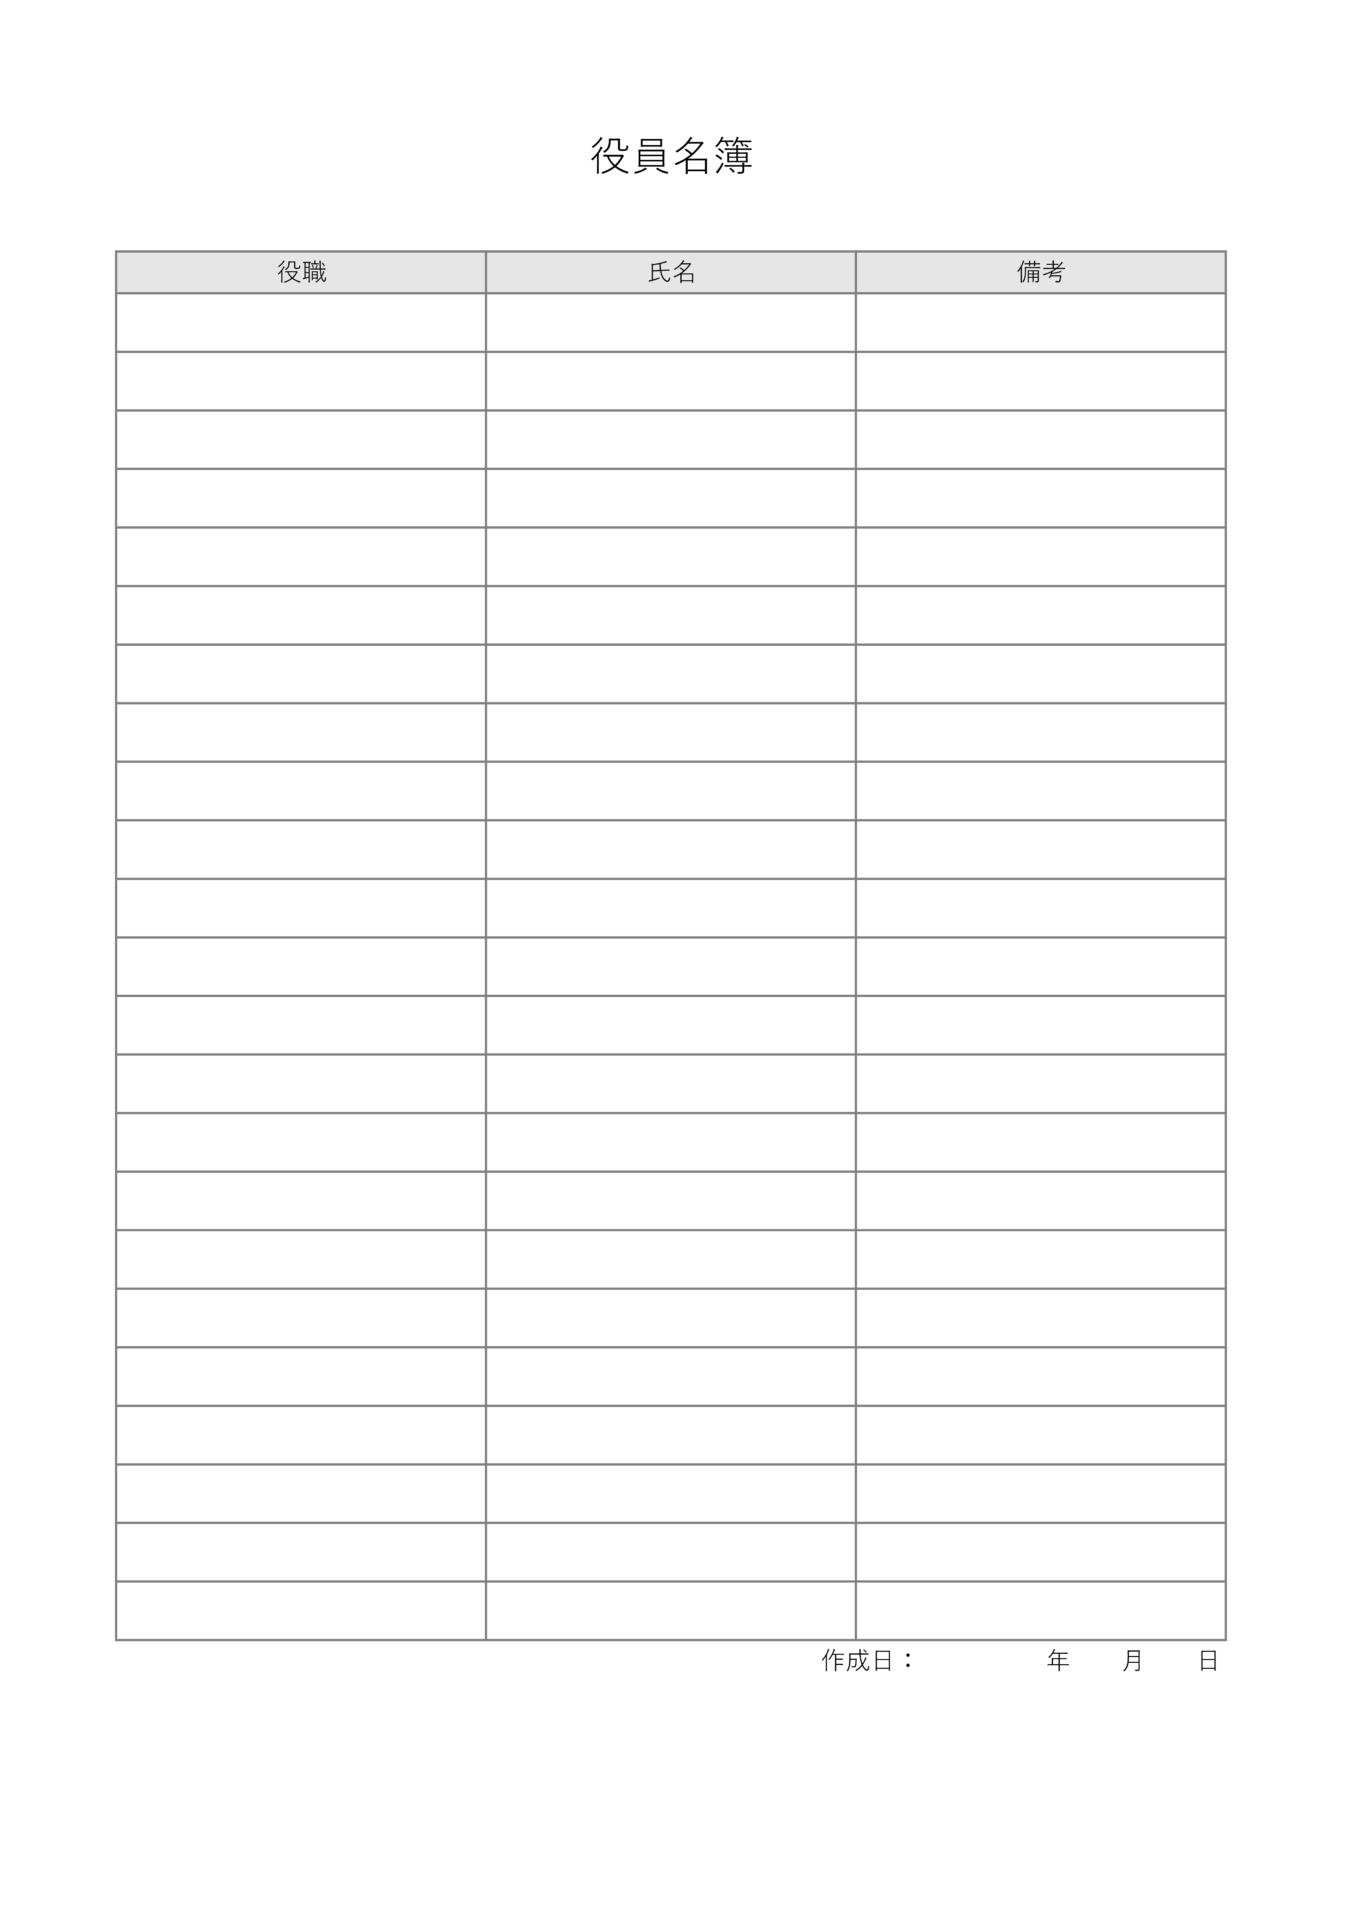 役員名簿テンプレート（貼り出し用）_Excel_A4_タテ型